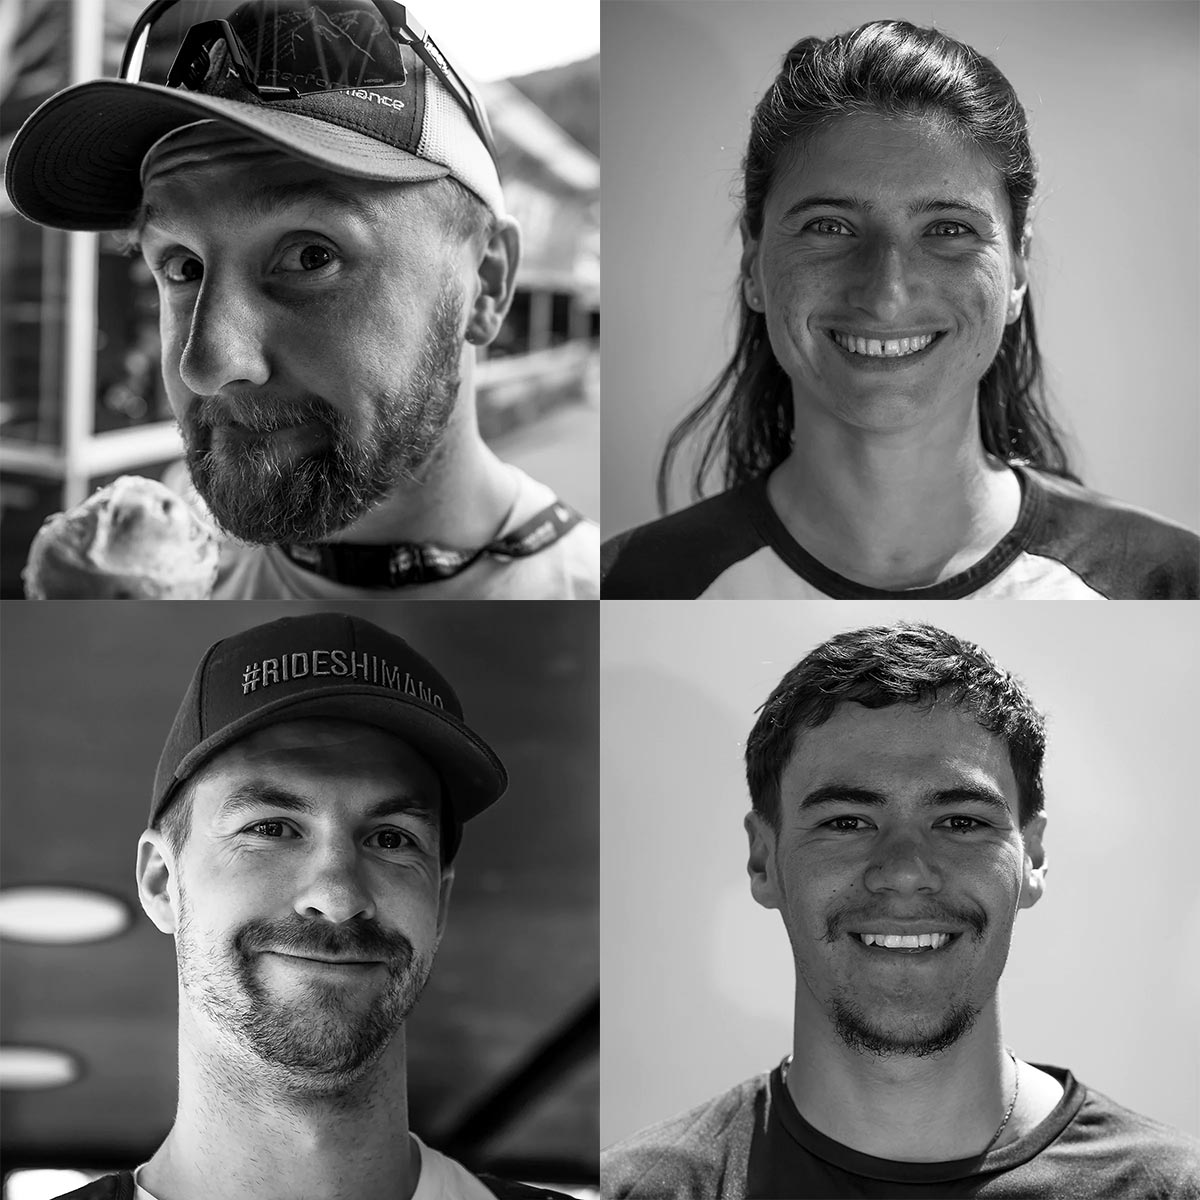 El renacido MS Intense Racing Team regresa a la Copa del Mundo de Descenso